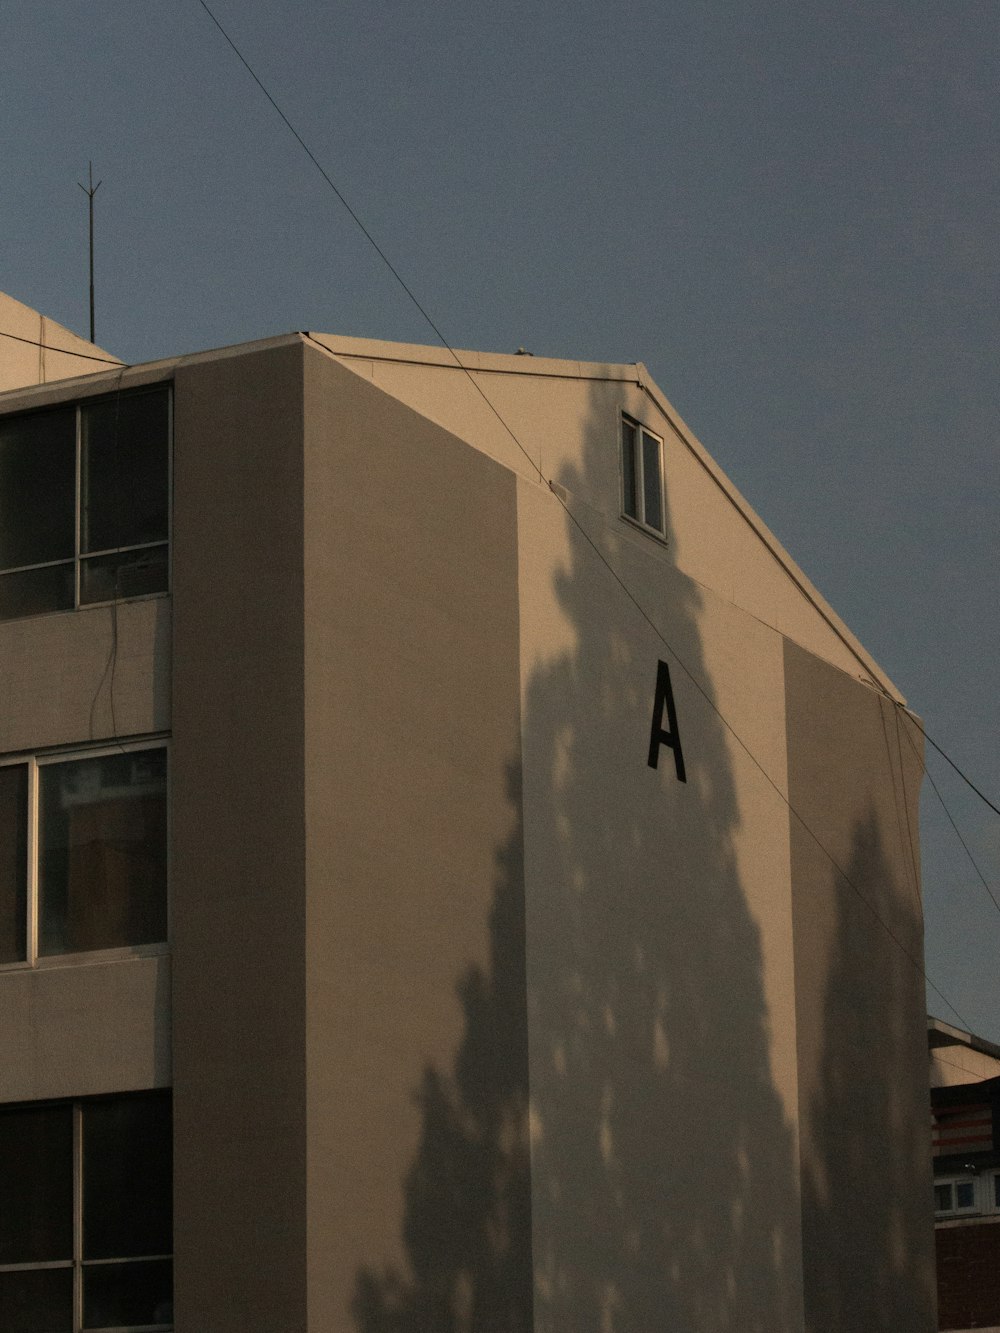 Ein Schatten einer Person auf einem Gebäude